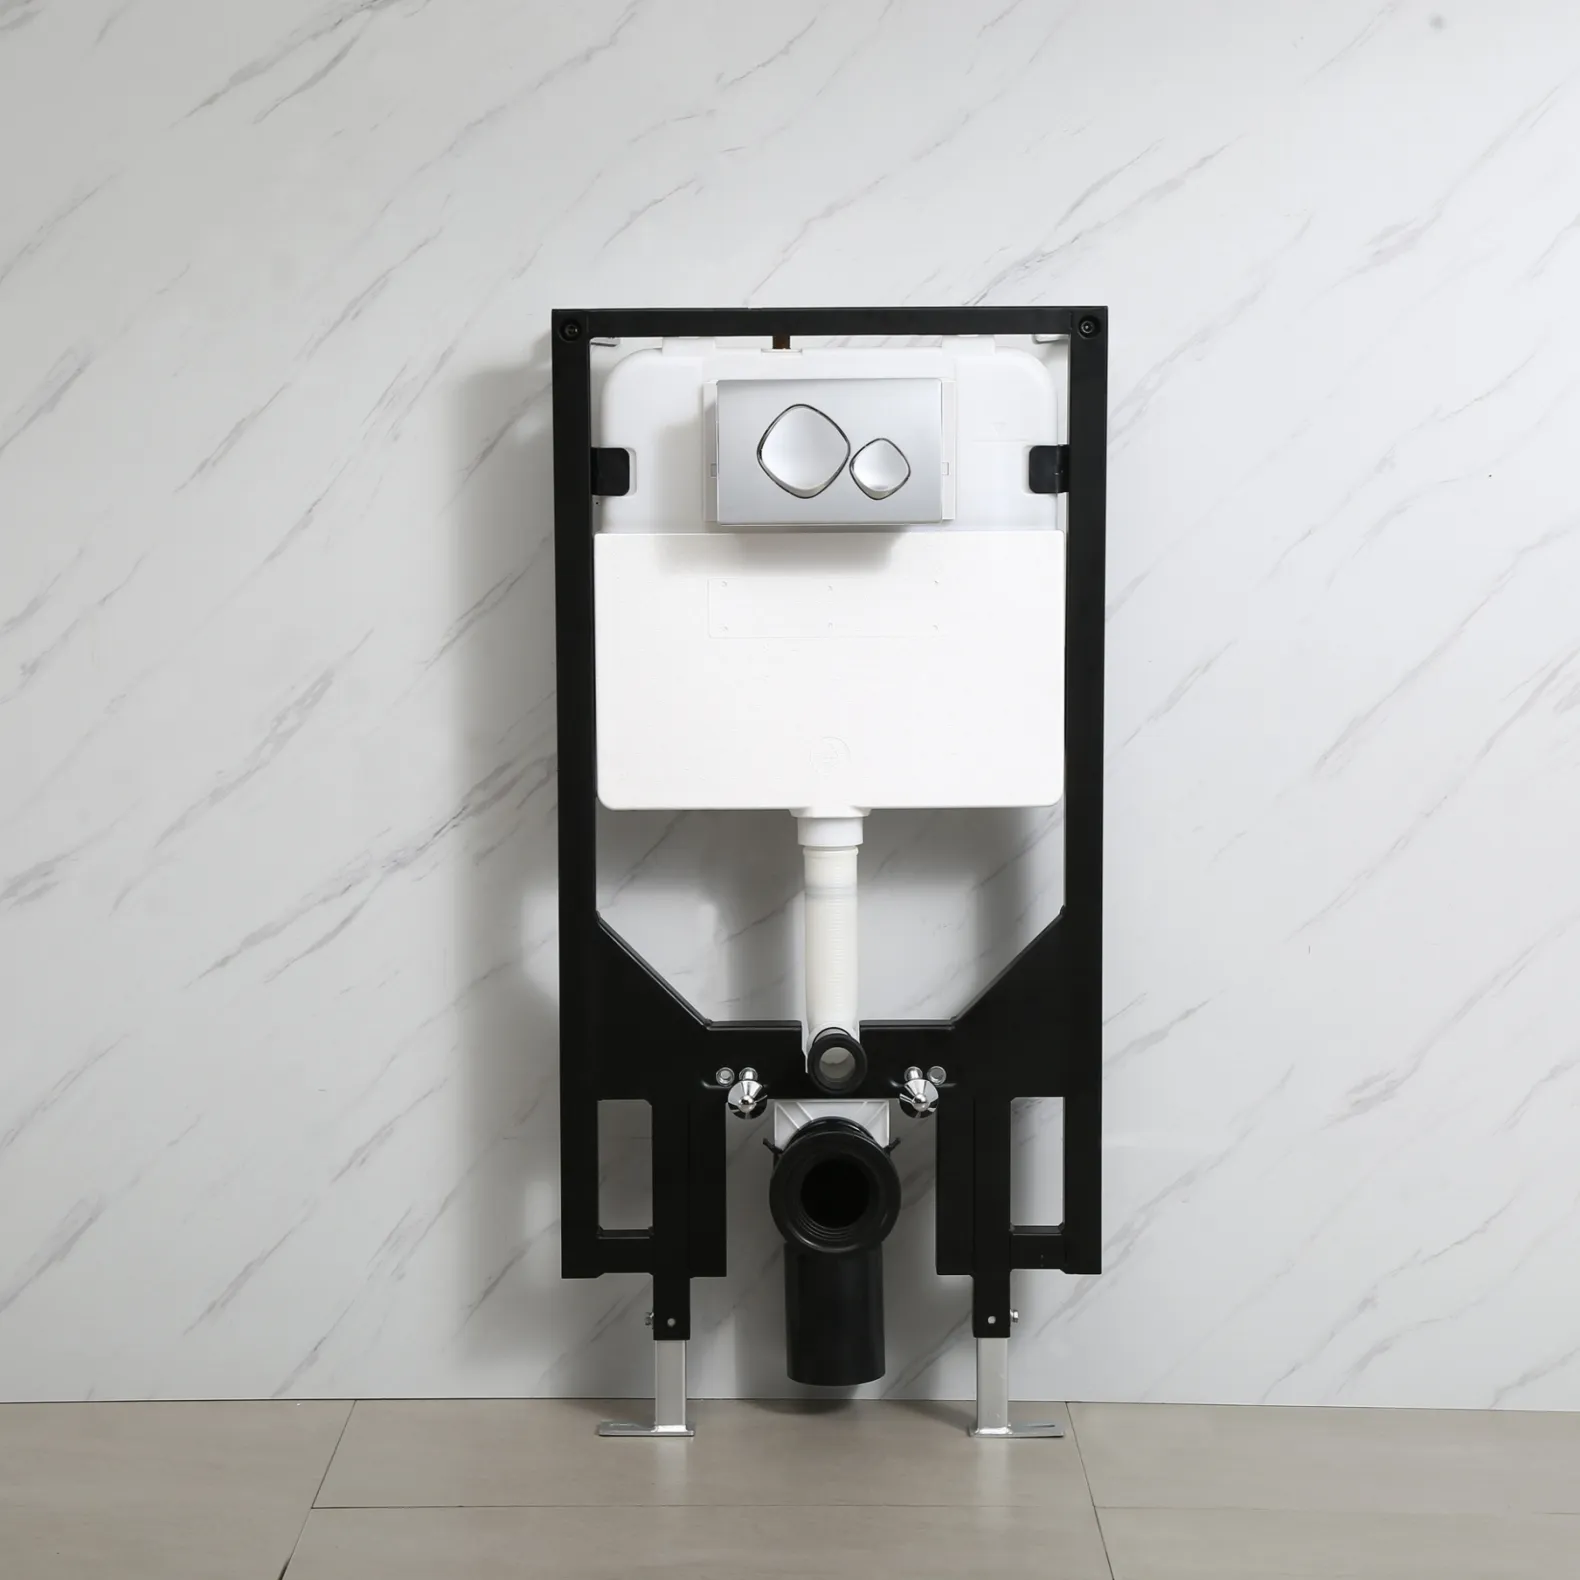 Verborgen In Aan De Muur Verborgen Stortbakken Voor Aan De Muur Hangende Toiletten Met Metalen Frame 400 Kg En Dubbele Spoelpanelen